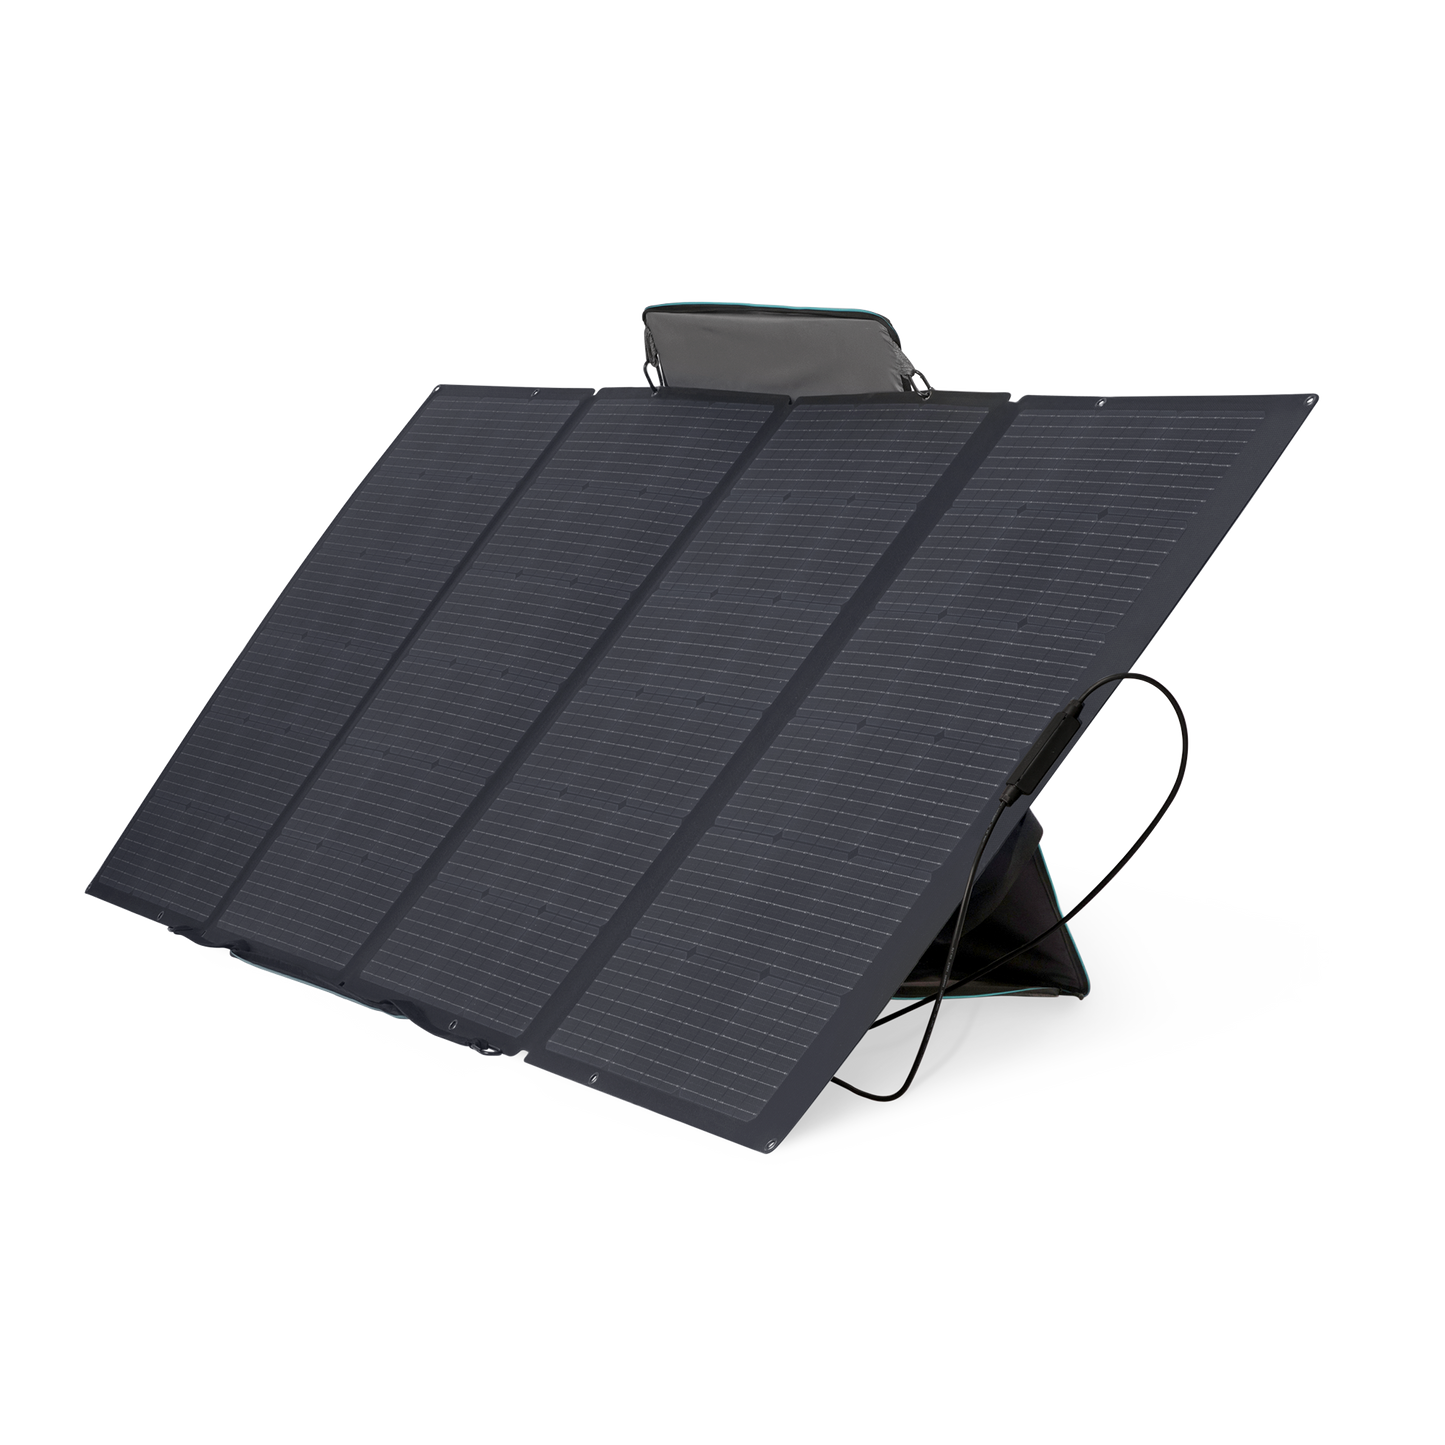 Módulo Solar Portátil y Flexible de 400W Recomendado para Estaciones Portátiles EFD330, EFD350 ó EFD500 / Ajuste de Ángulo / Carga Eficiente / Incluye Cable XT60 a MC4